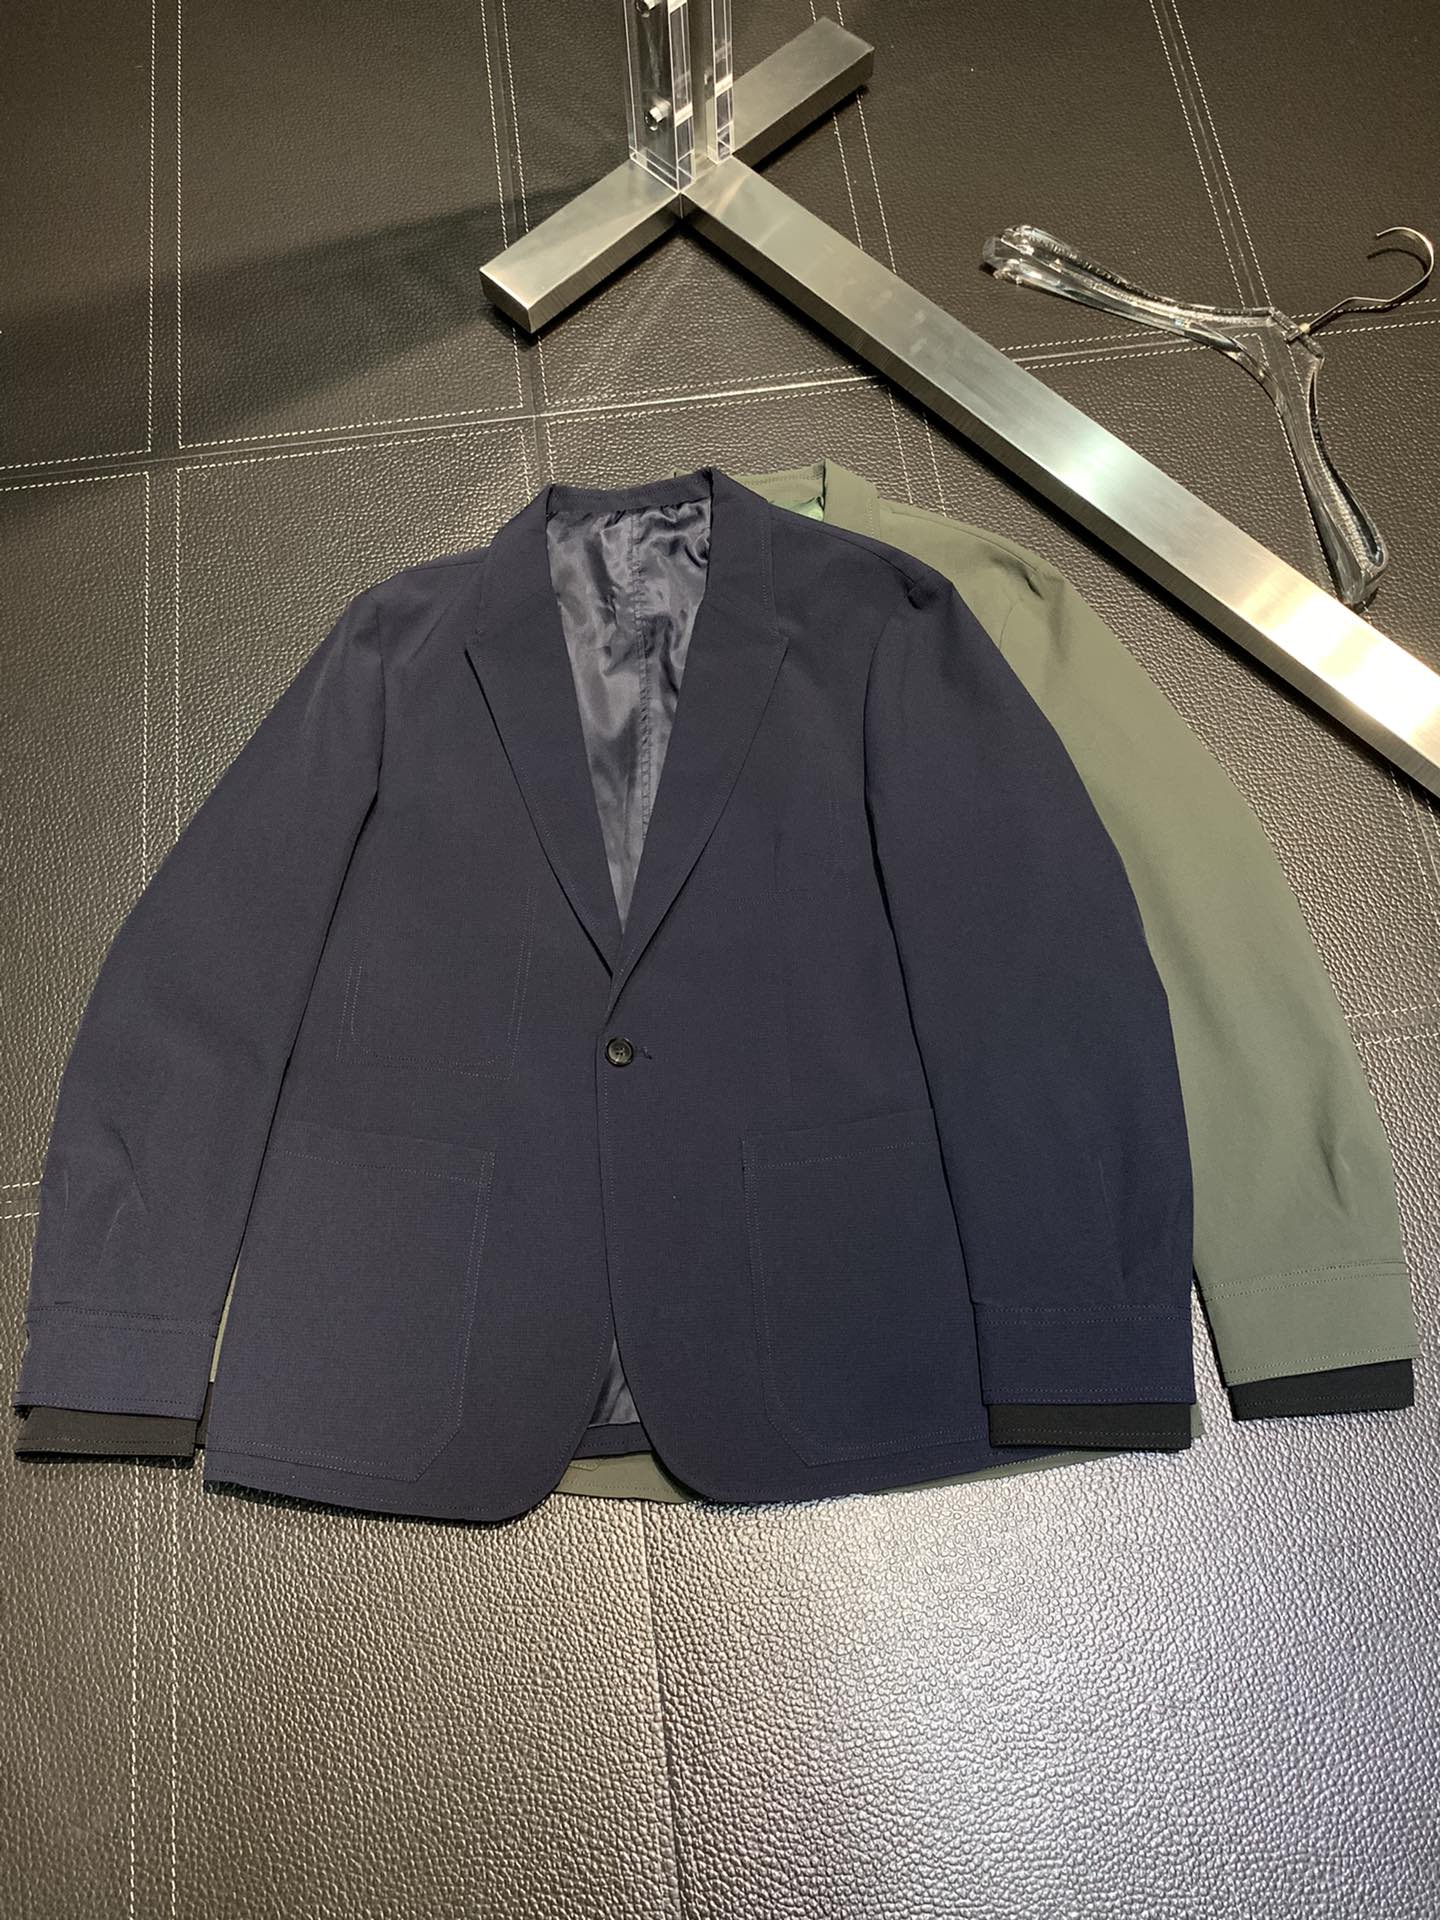 傑尼亞 西服休閒夾克外套獨家專供最新高端定制外套